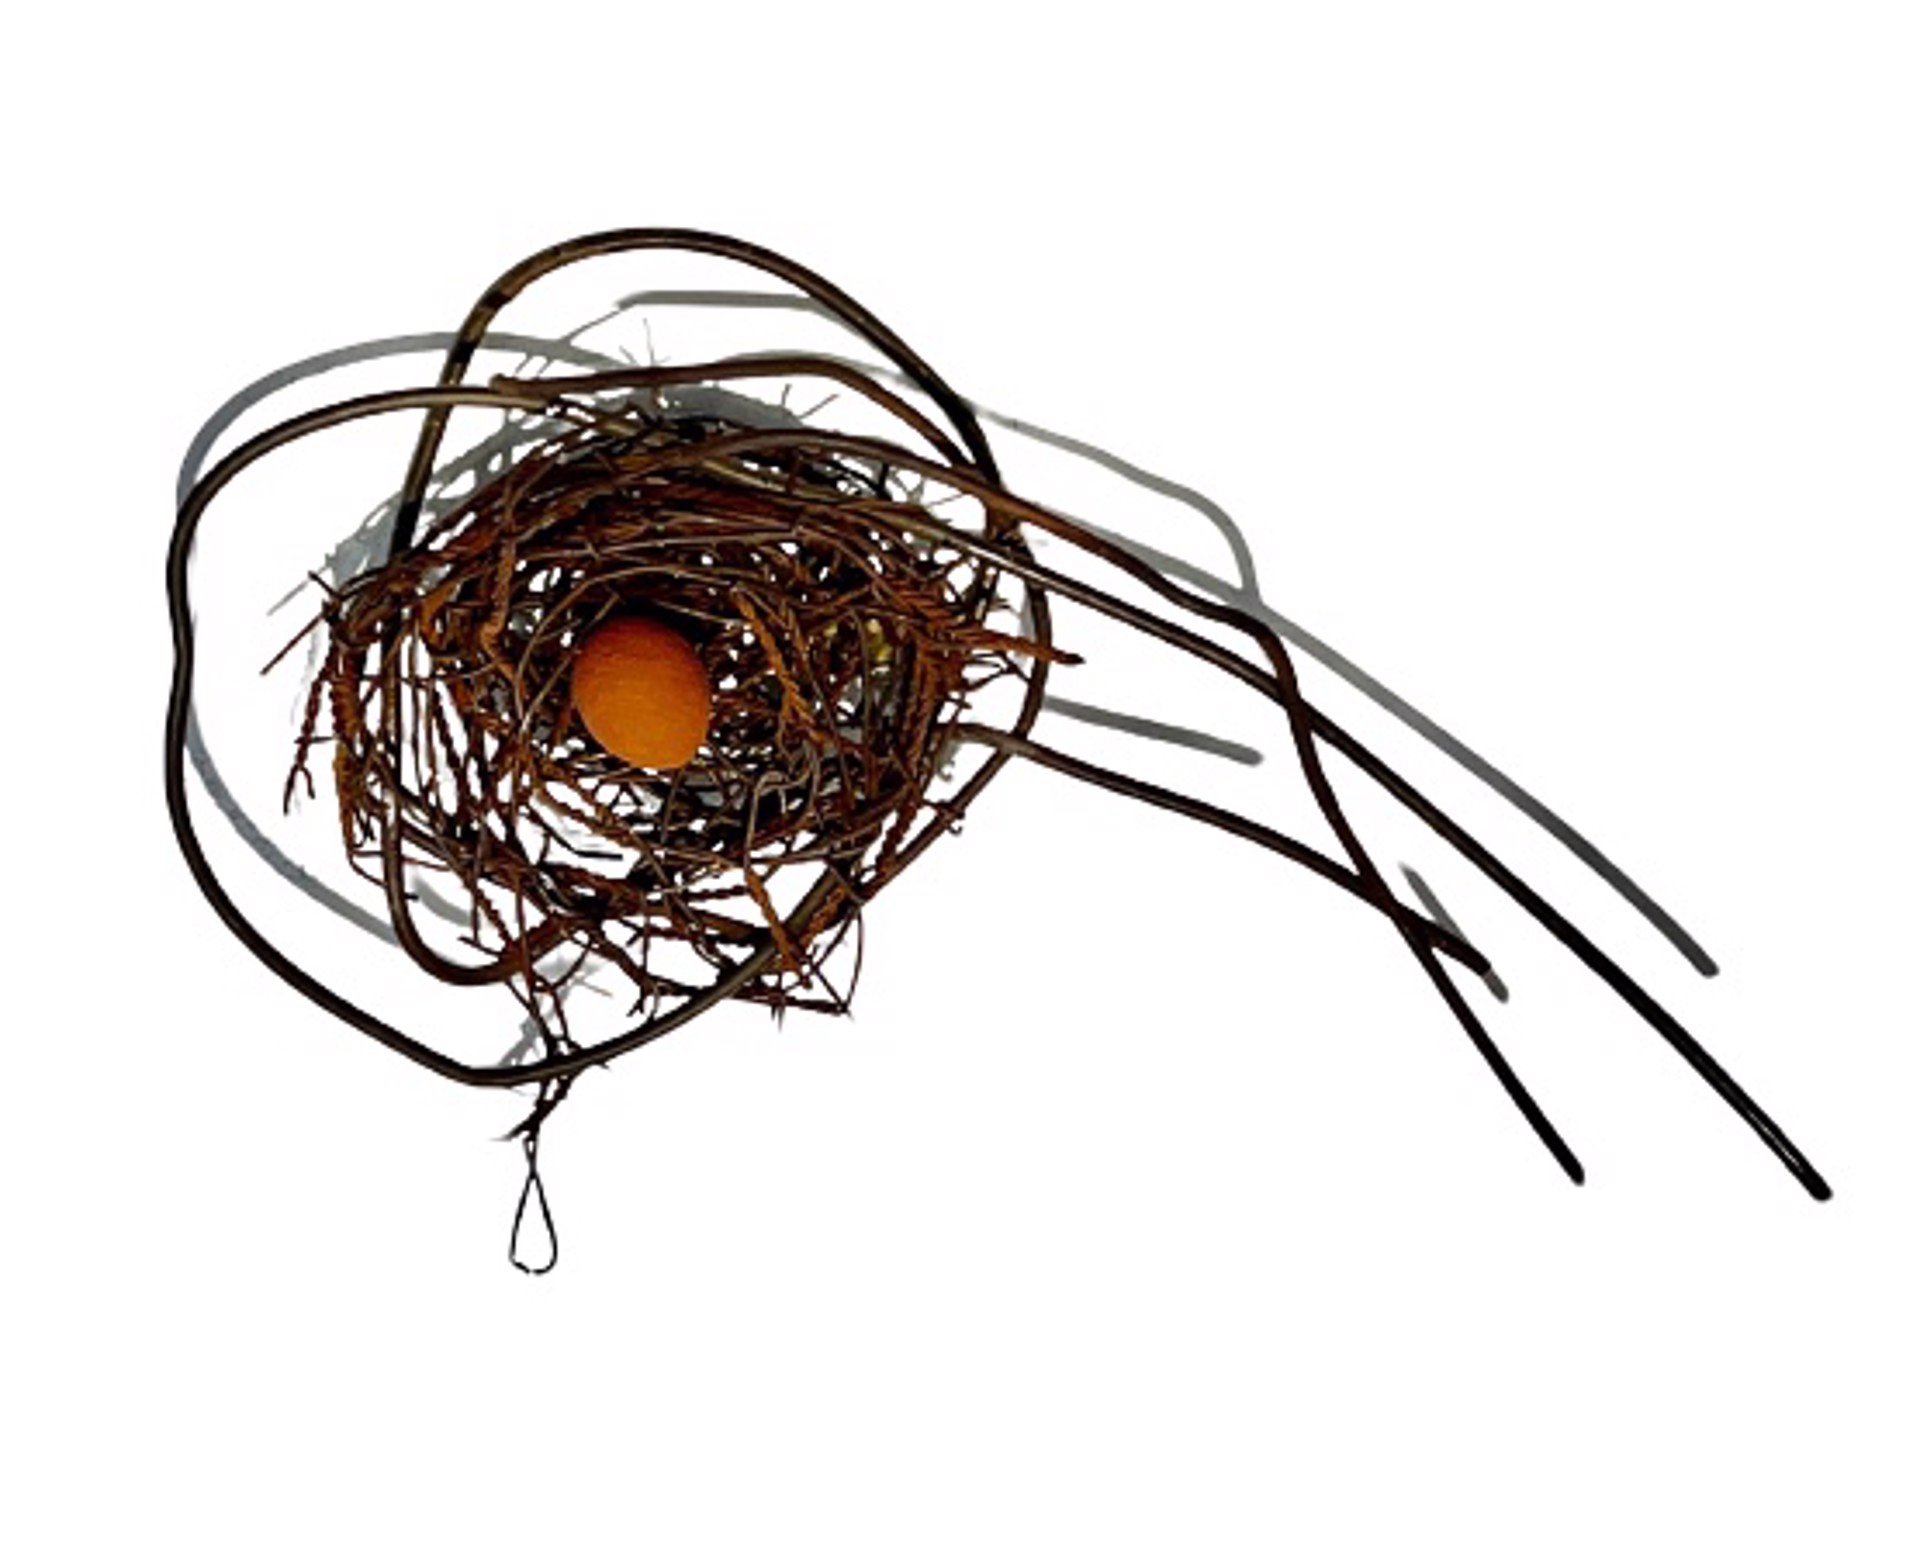 Hand Woven Wire Nest w/1 Terra Cotta Egg #1364 by Phil Lichtenhan